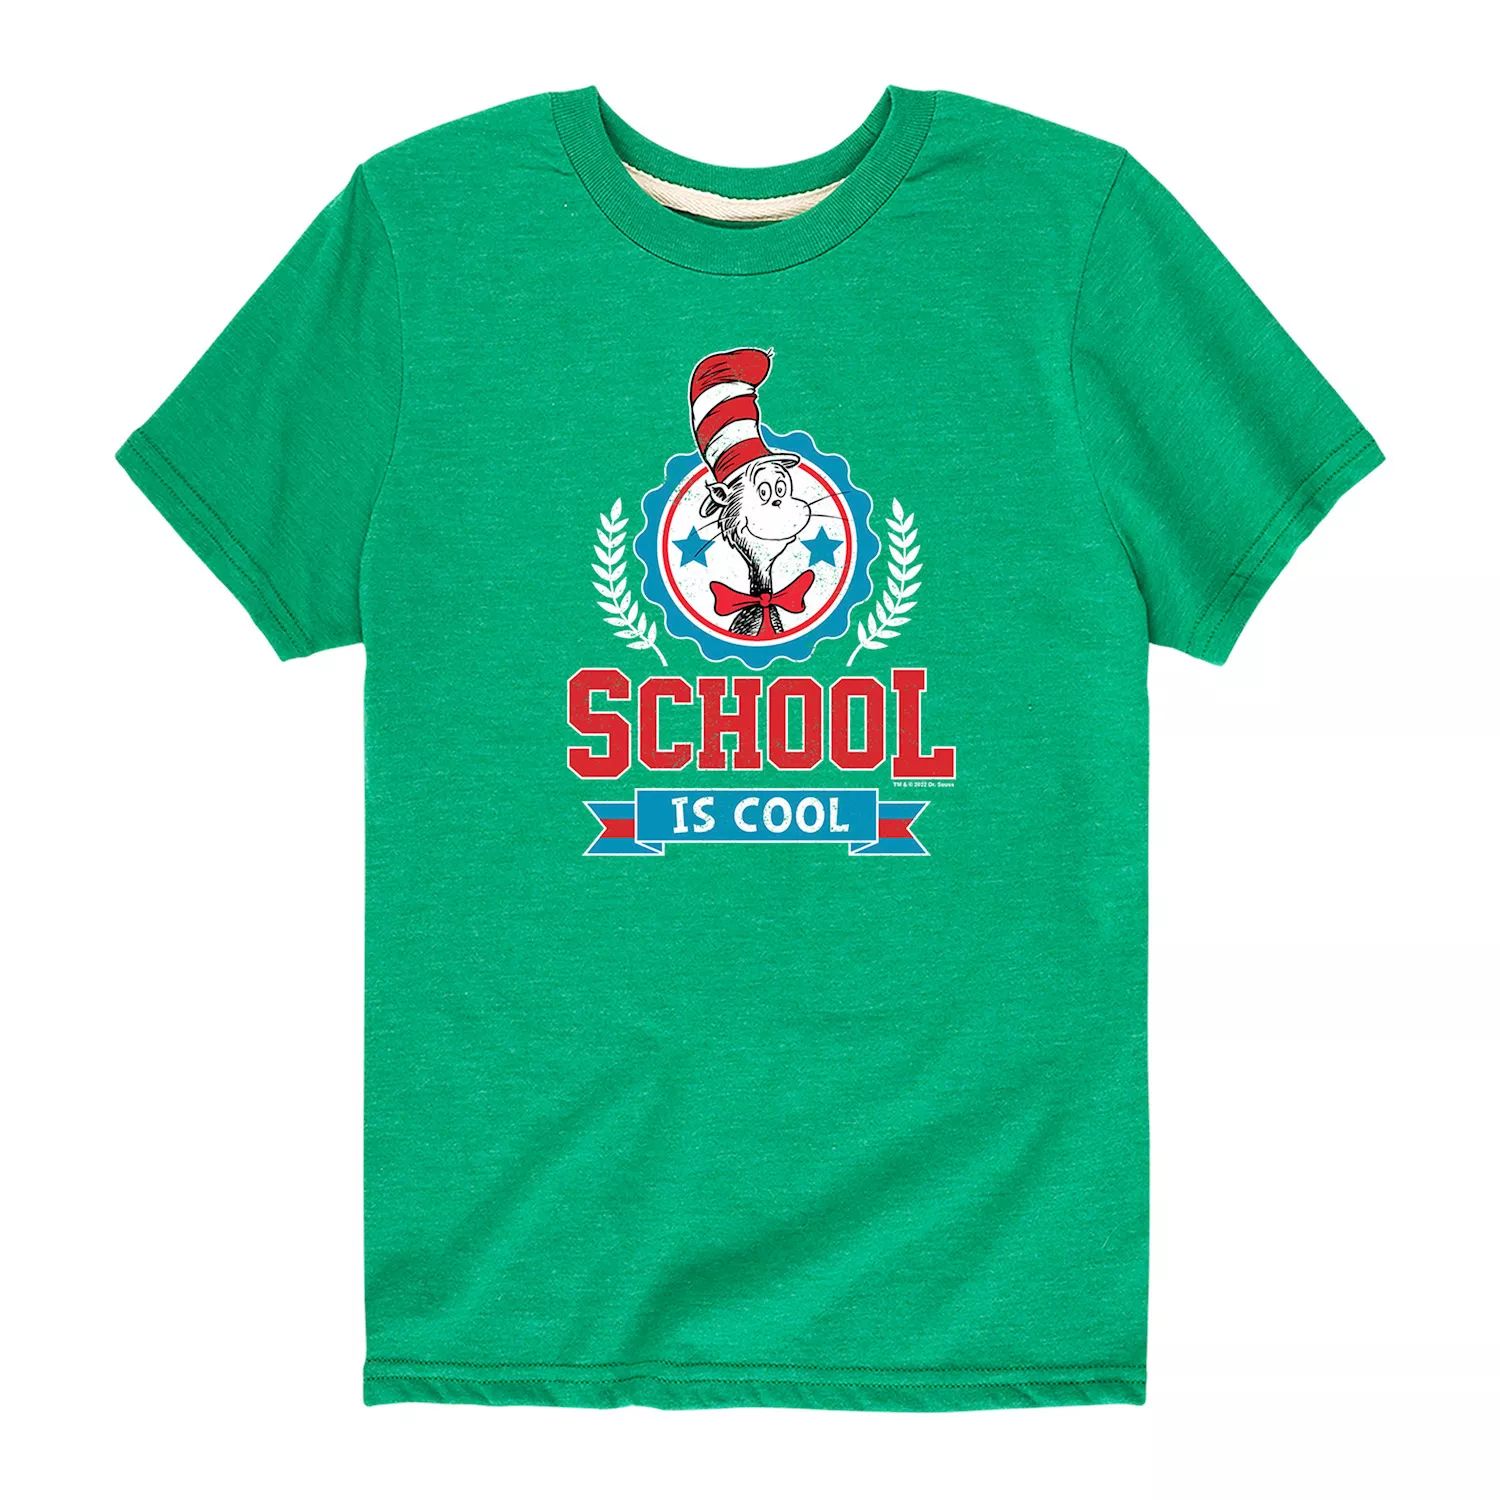 Футболка с рисунком «Школа Доктора Сьюза» для мальчиков 8–20 лет Licensed Character, зеленый футболка с рисунком отряд 1 го класса доктора сьюза для мальчиков 8–20 лет dr seuss серый